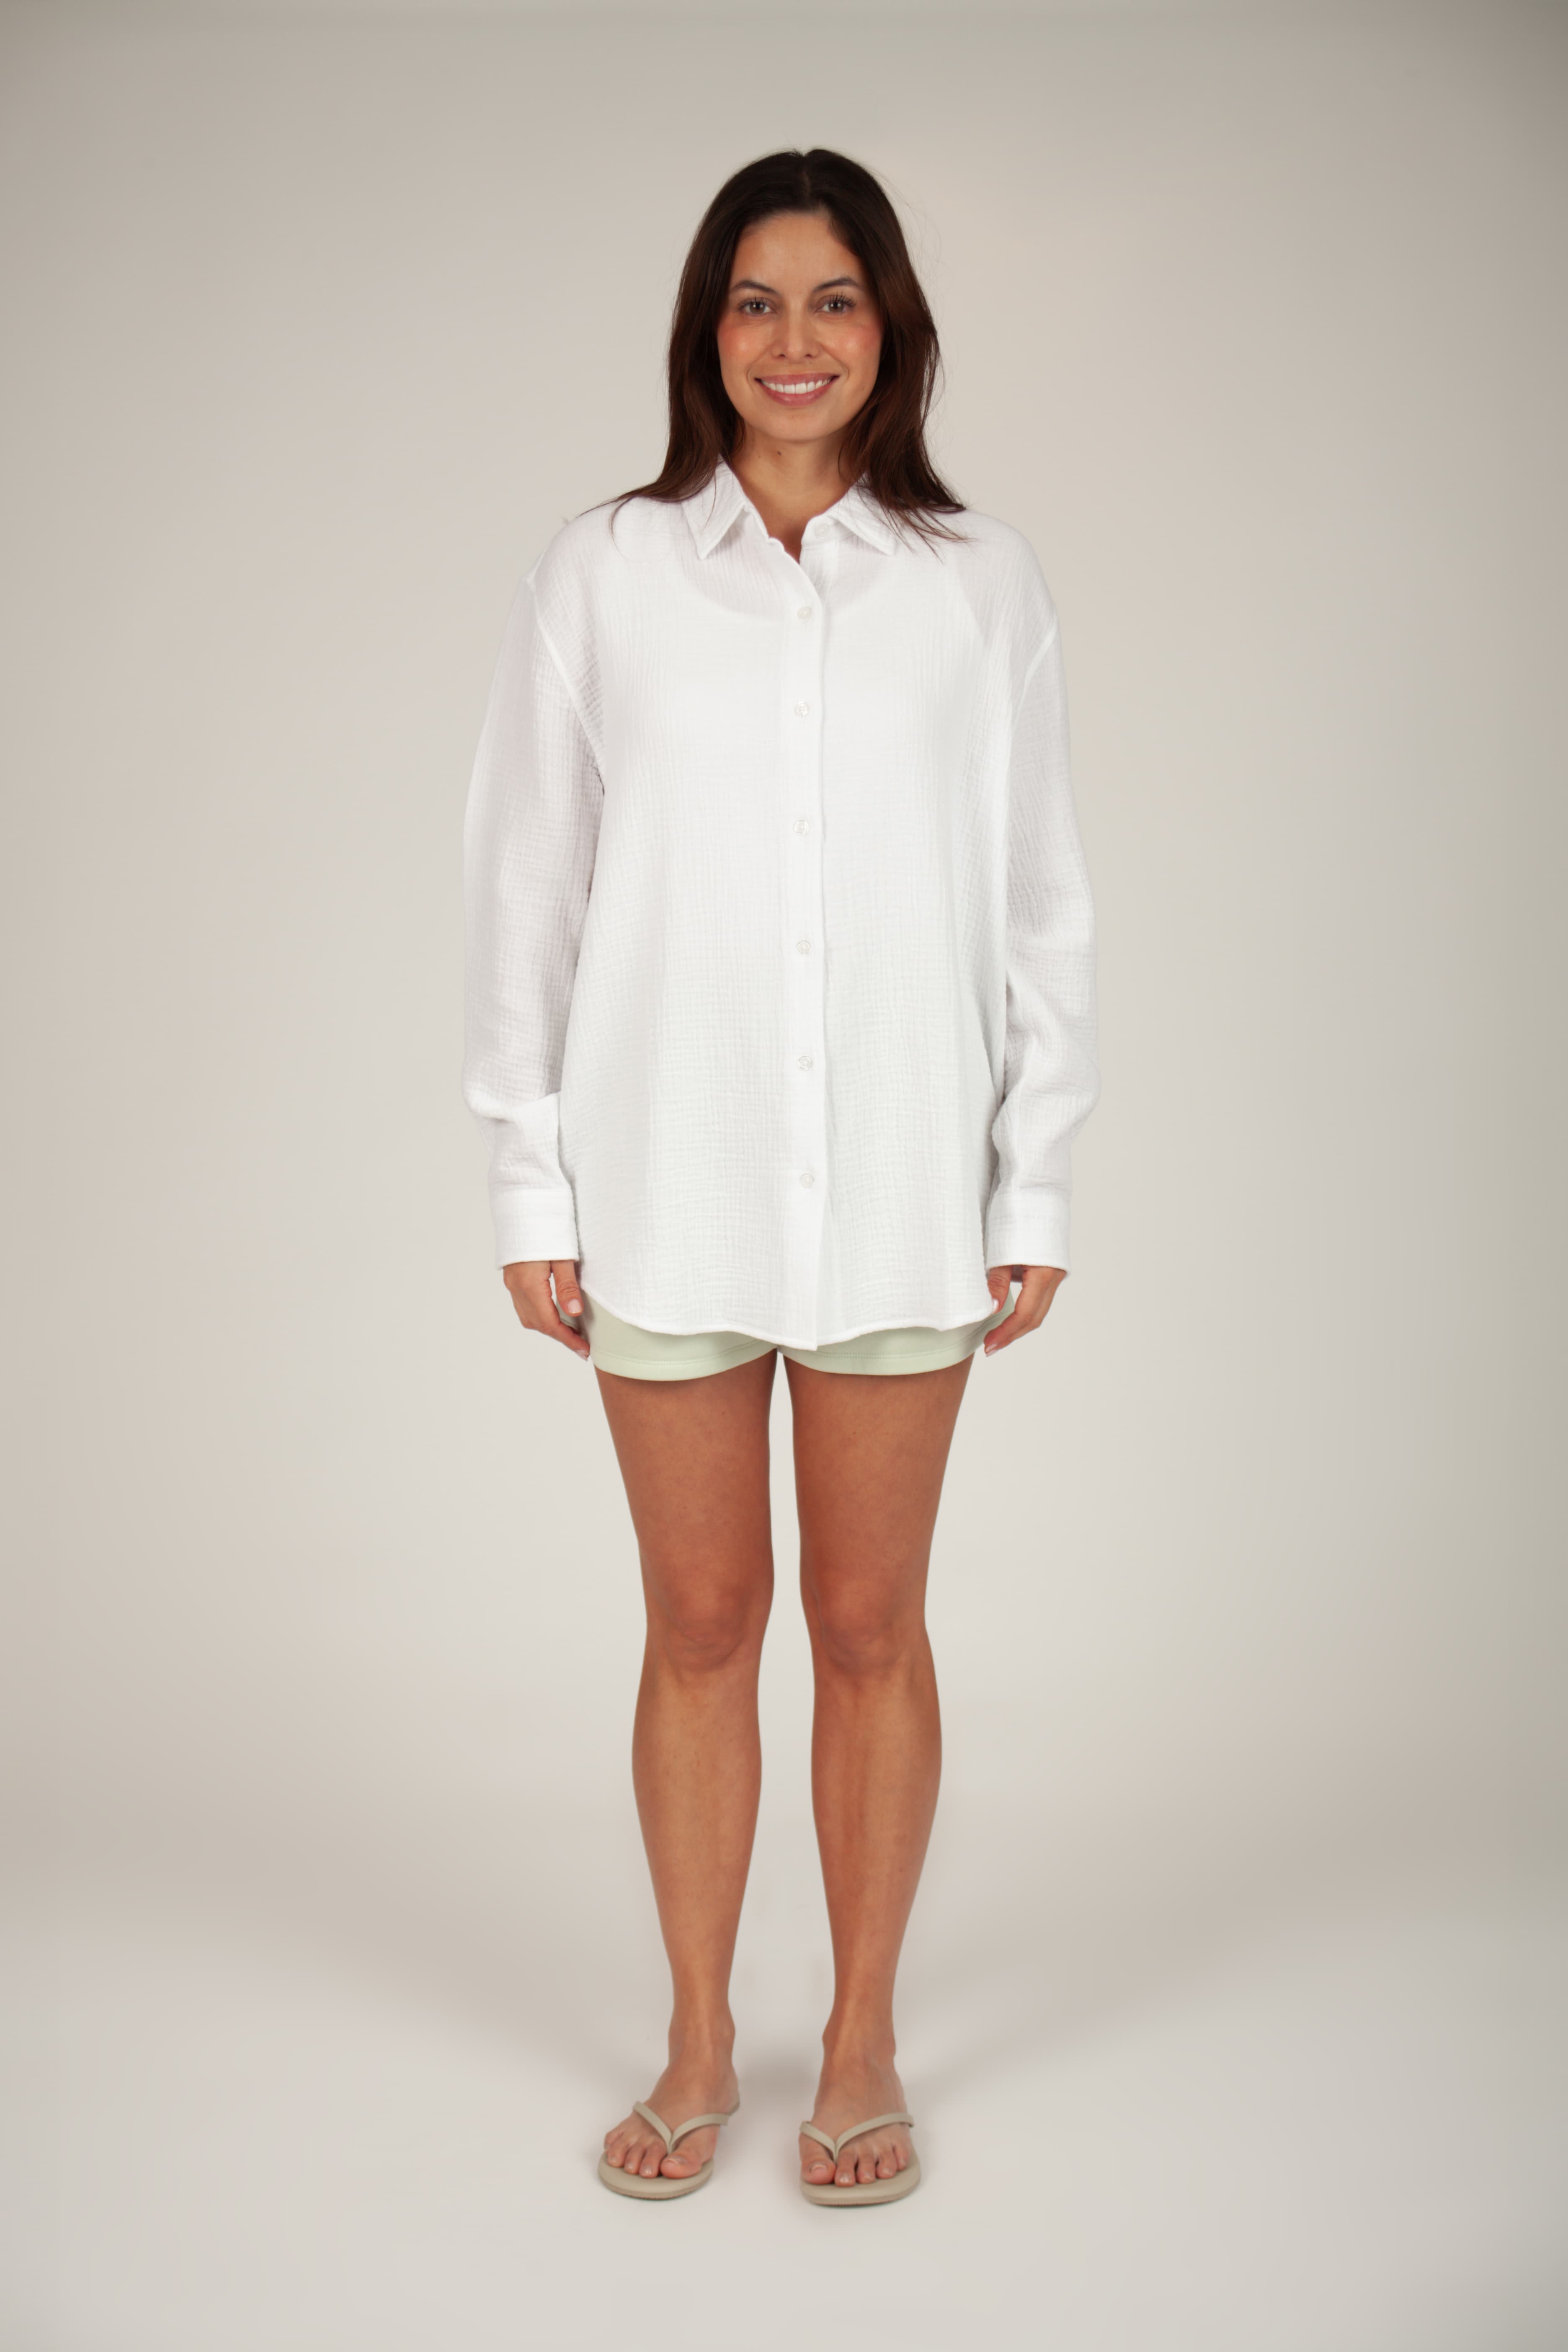 Lightweight cotton gauze button down shirt in bright white